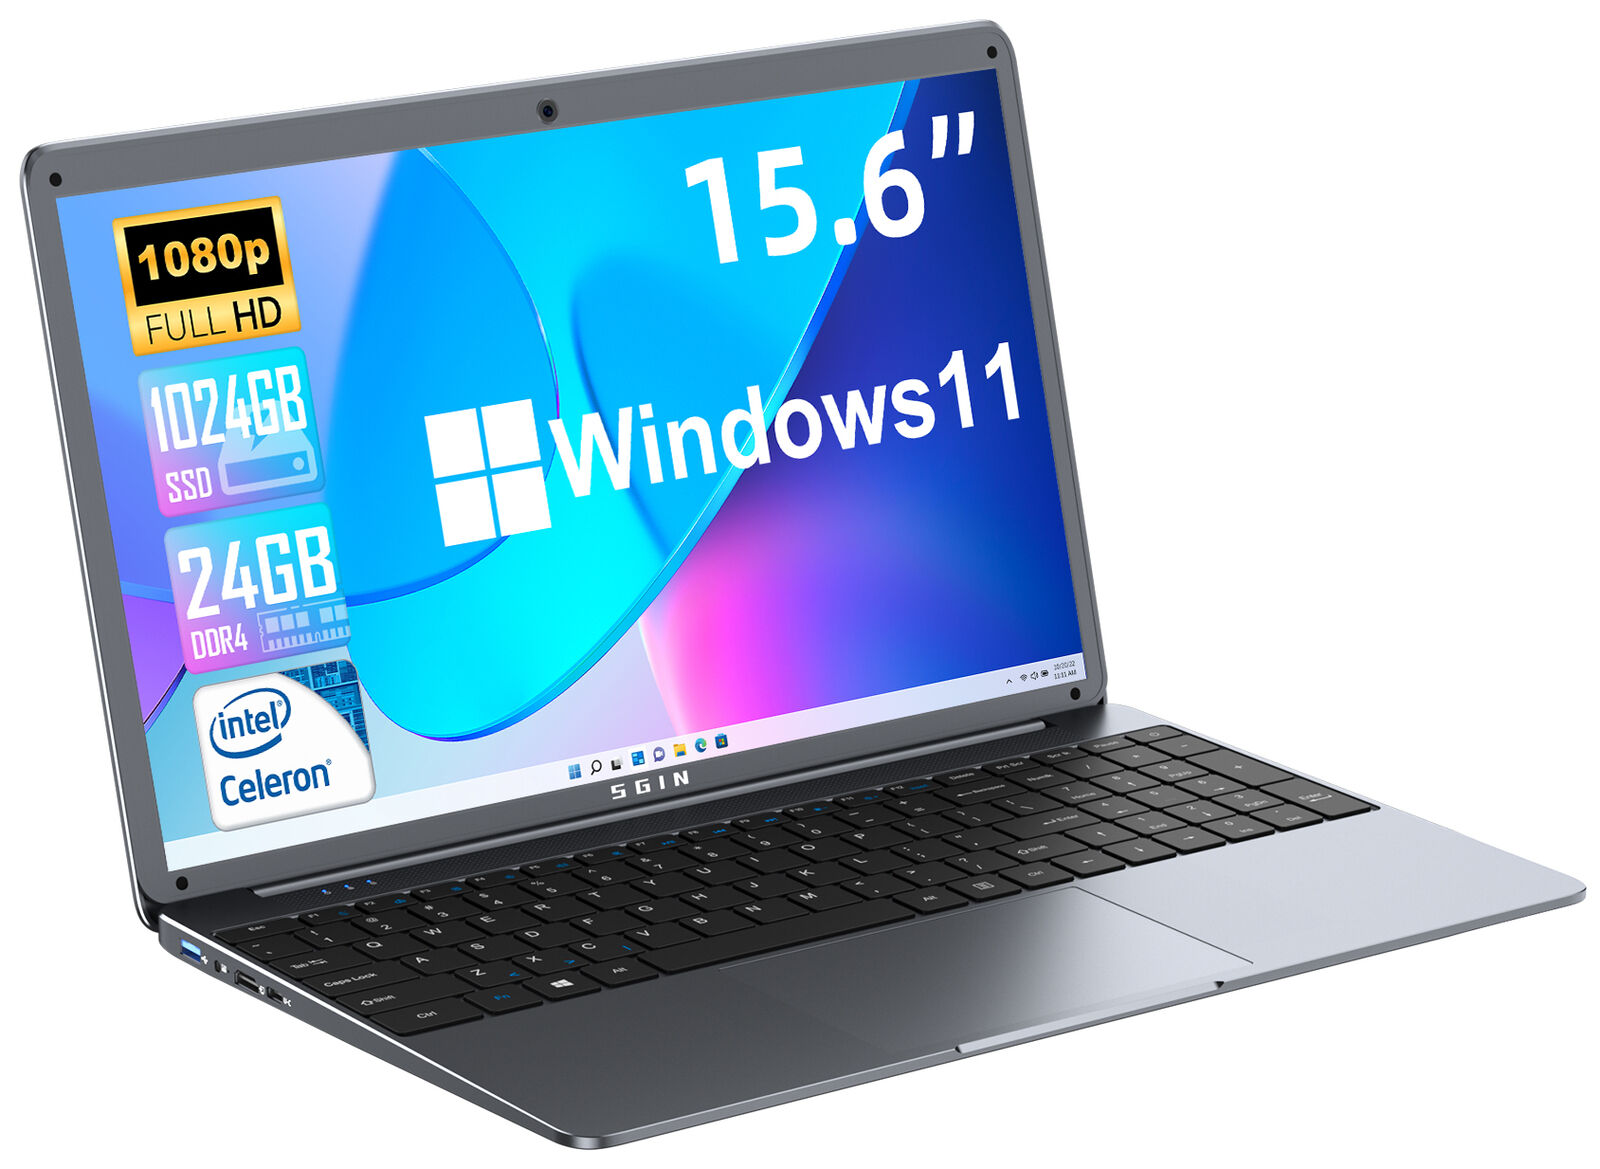 SGIN 15.6 Inch Laptop FHD 24GB RAM 1TB SSD Intel Celeron 2.9 GHz 5.0G WiFi HDMI